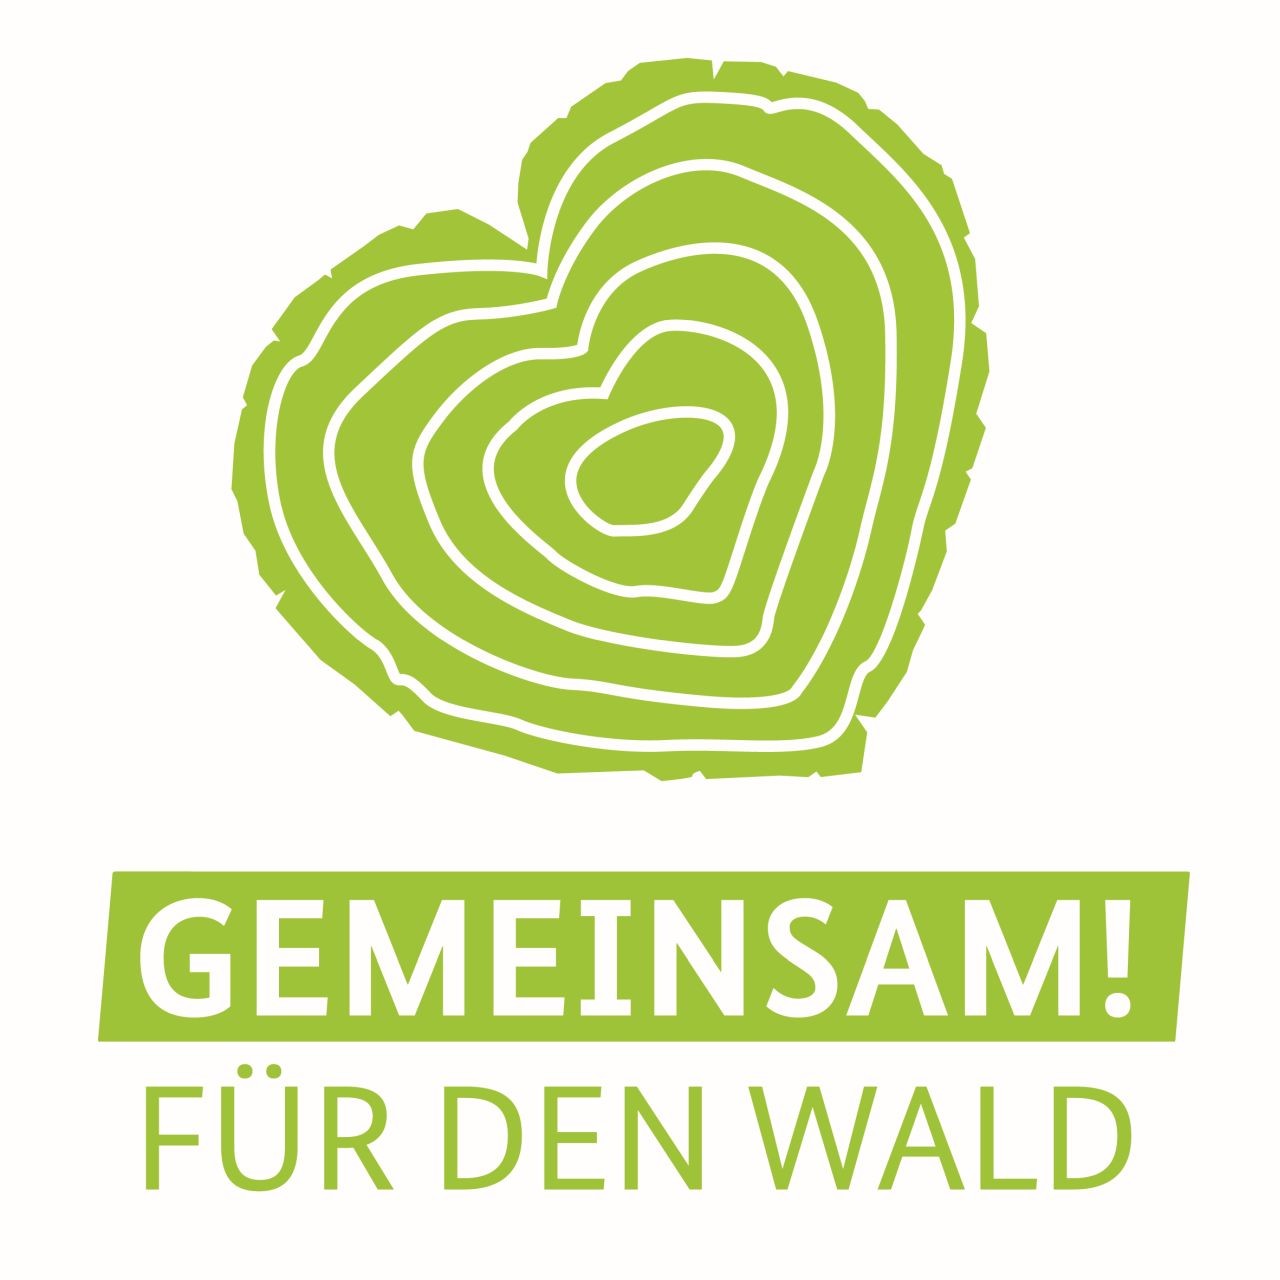 Kampangen-Logo "Gemeinsam für den Wald"